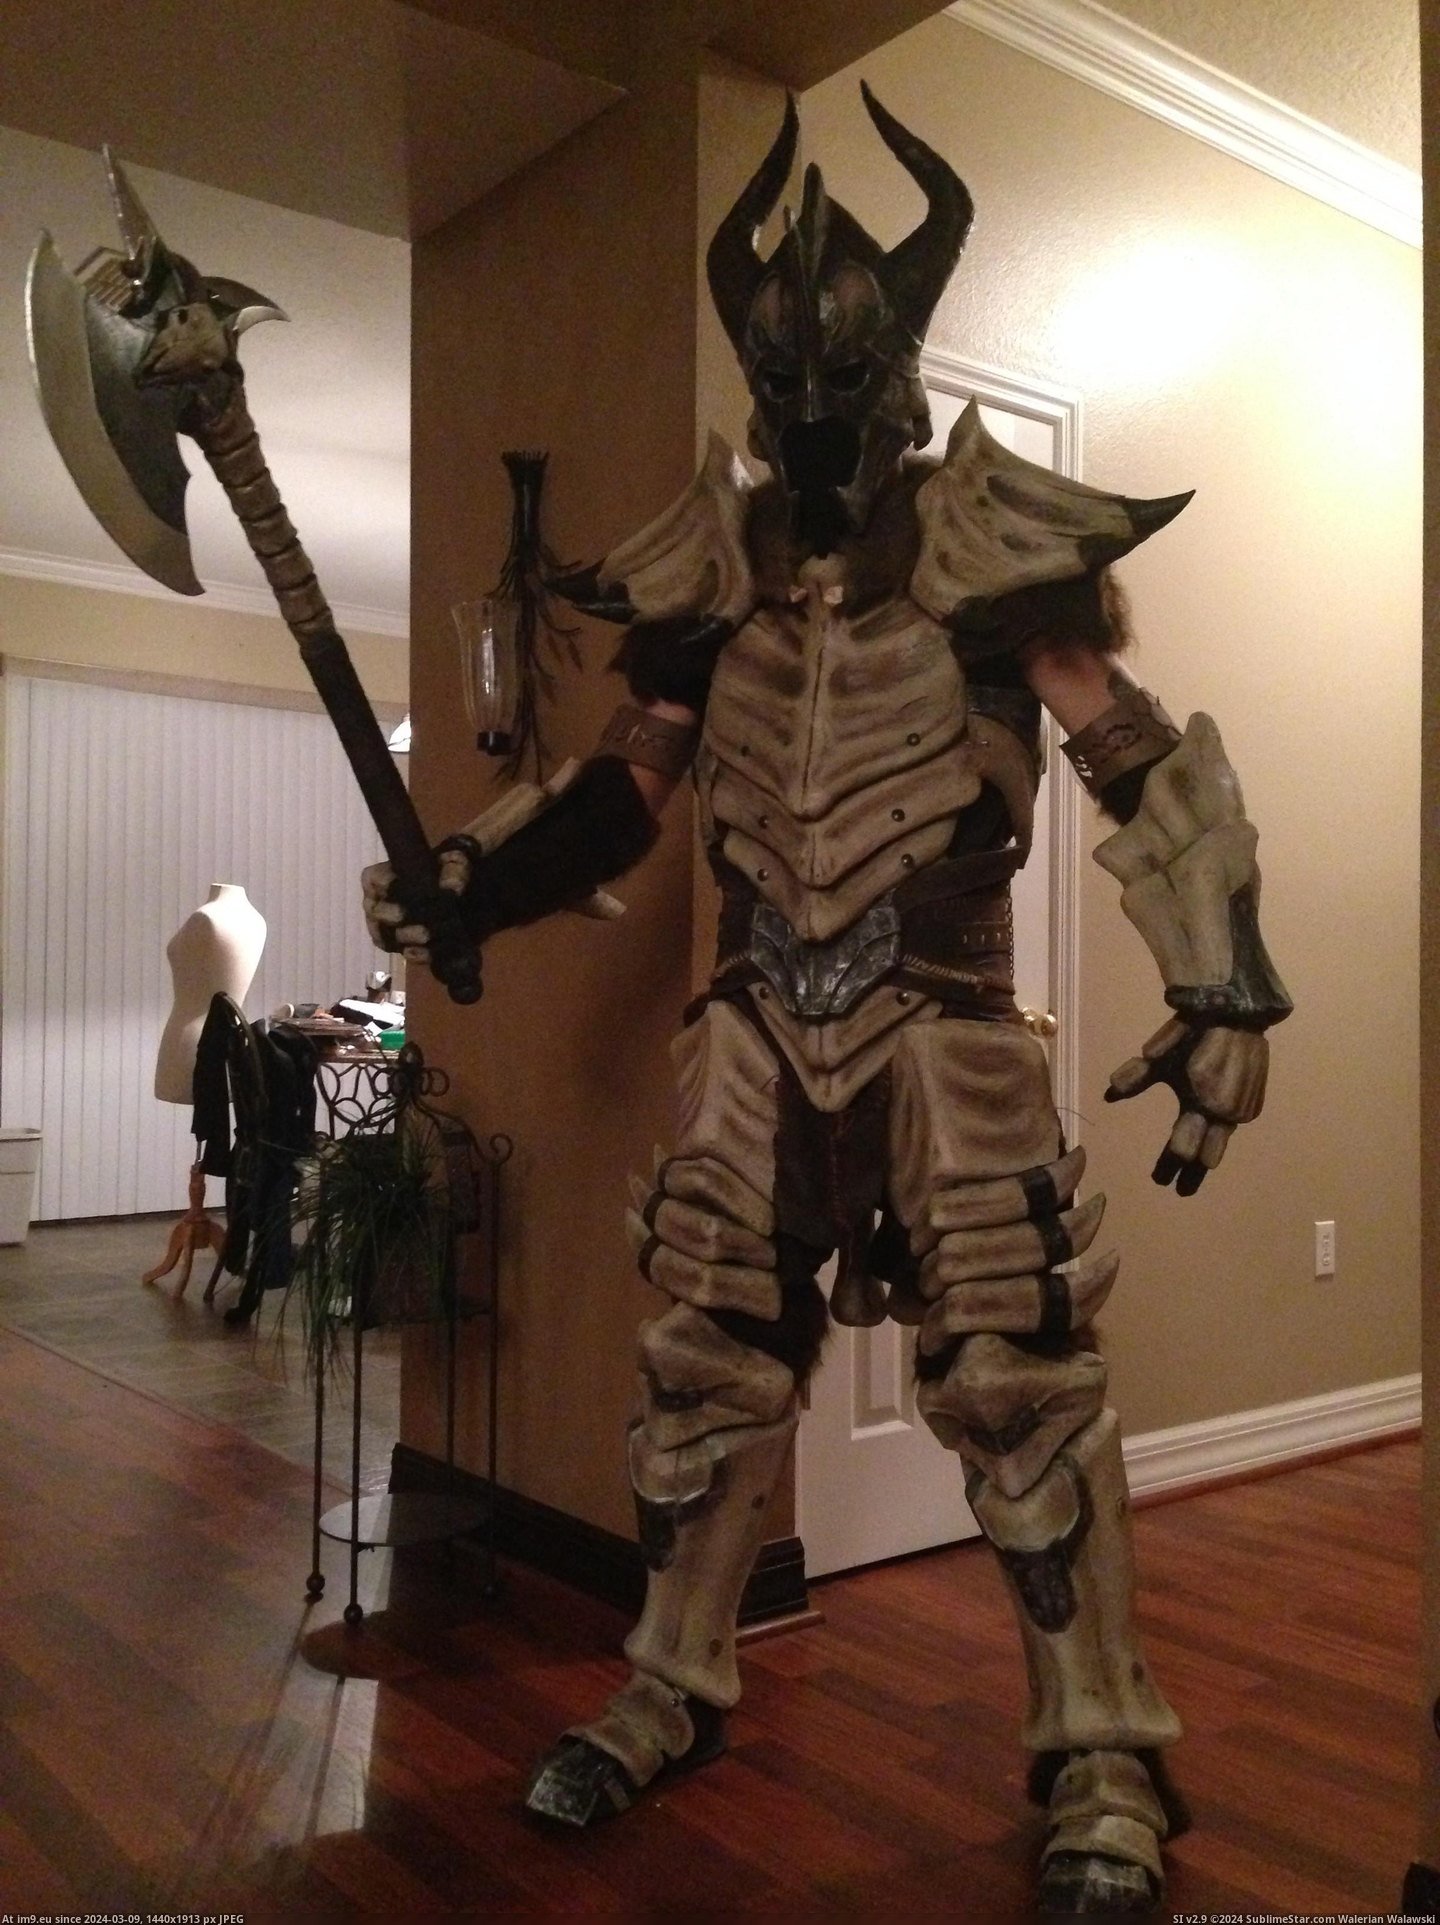 #Gaming #How #Dragonbone #Skyrim #Armor [Gaming] [Self] Skyrim Dragonbone Armor - How I made it 17 Pic. (Image of album My r/GAMING favs))